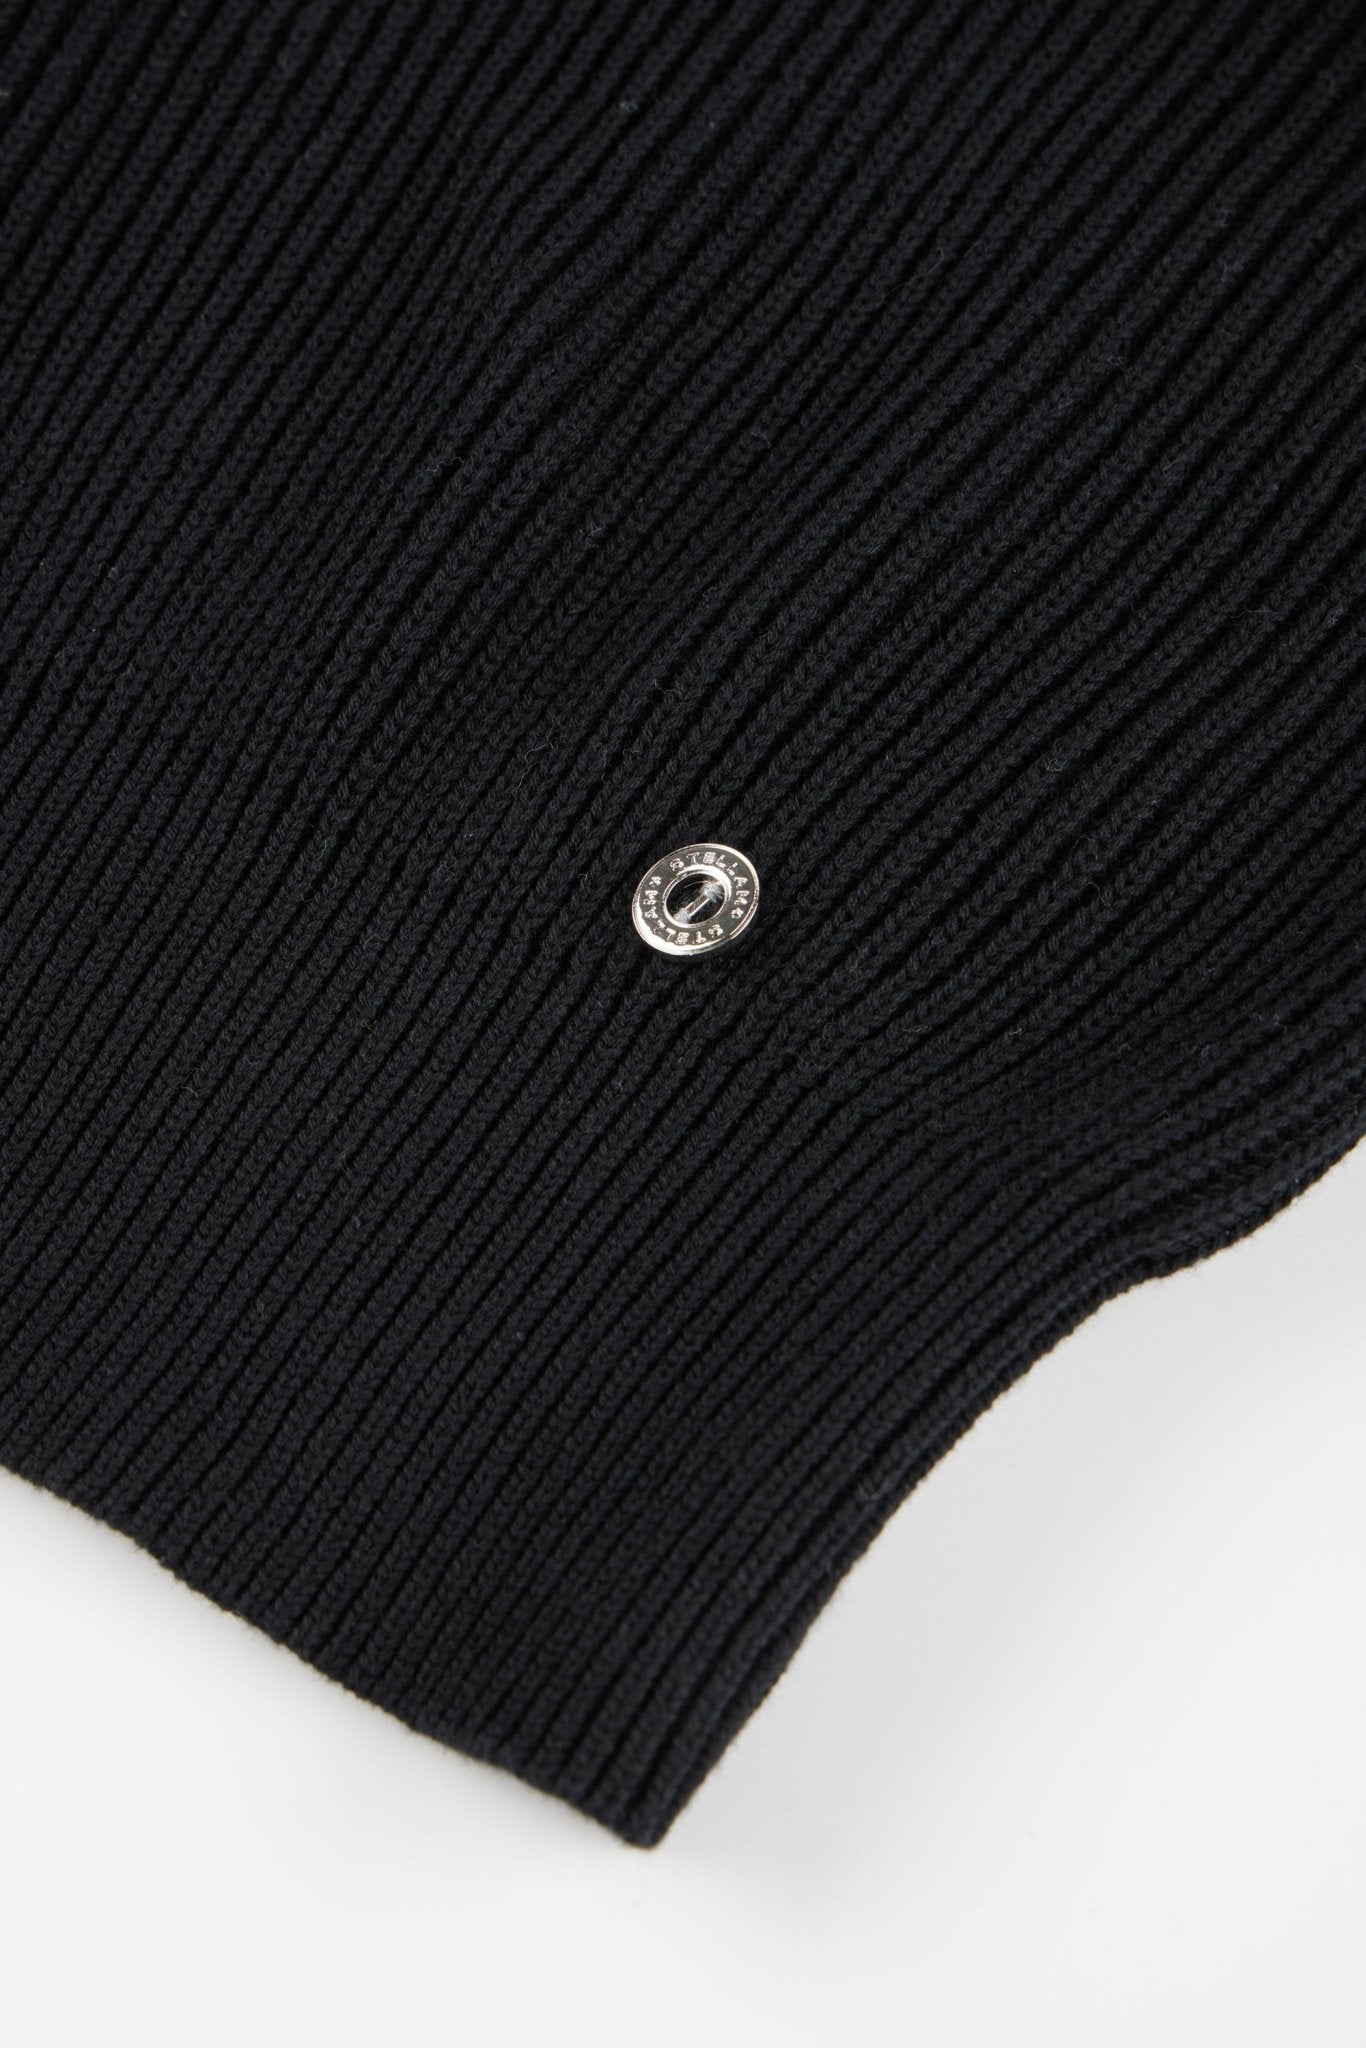 HOODIE cotton zip jacket (Black) - STELLAM